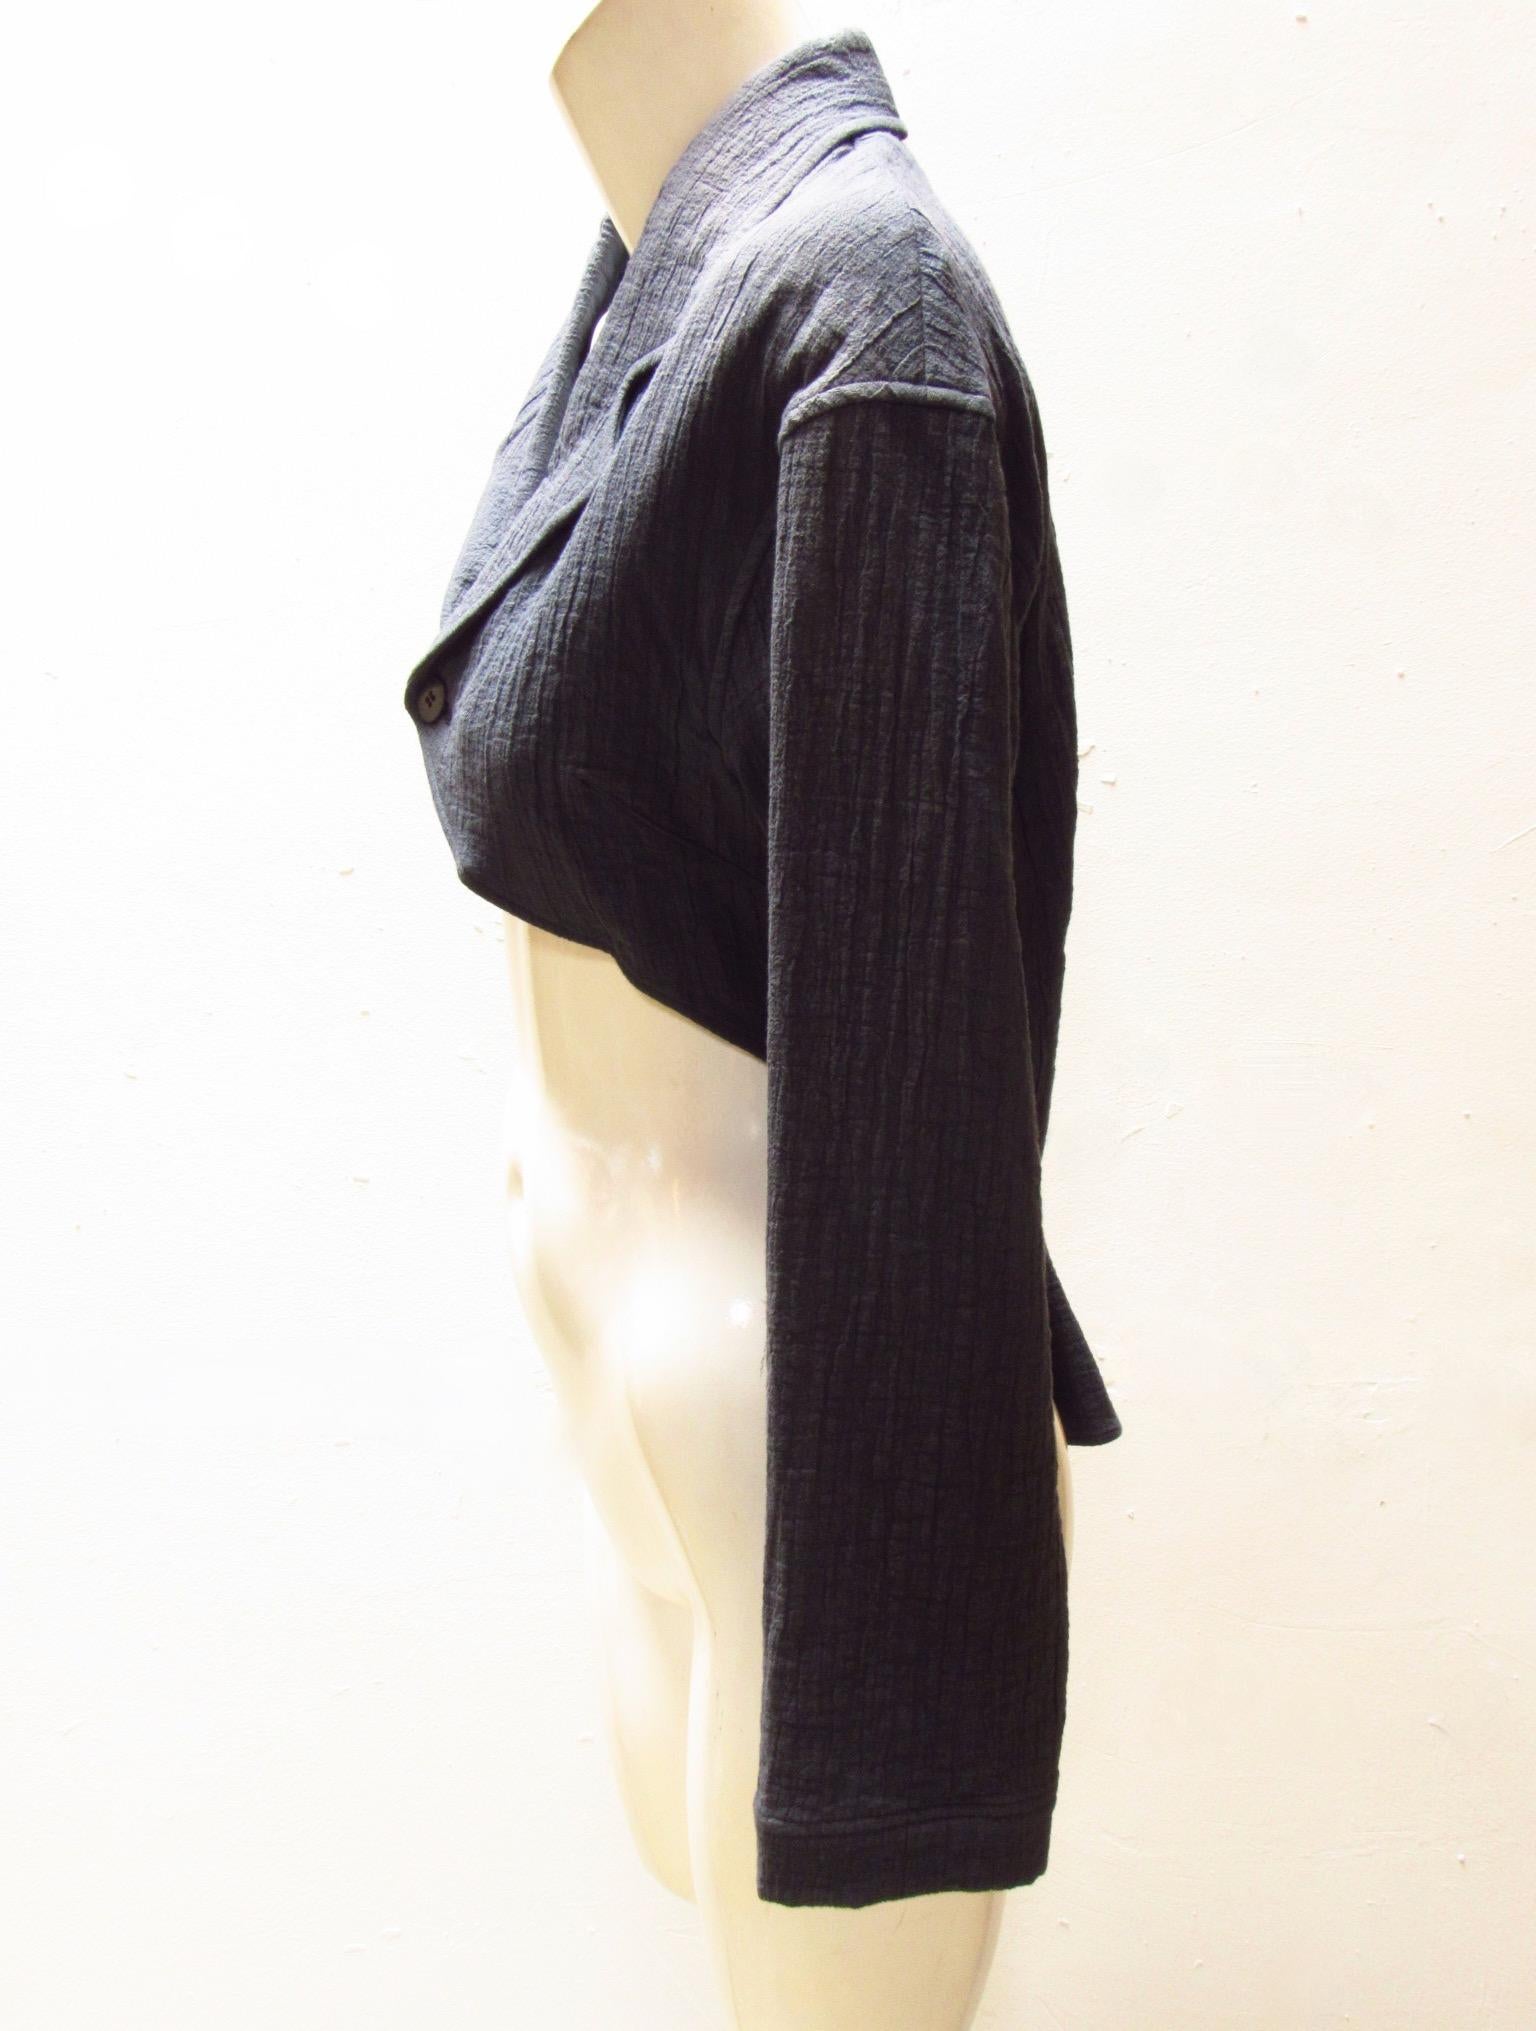 Cette veste cropped en coton du millésime Matsuda est de couleur pétrole, le tissu a une texture de gaze lourde. Les revers se ferment à l'aide d'un bouton en bois à l'avant, au niveau de la partie centrale du vêtement. Le tissu plus long dans le